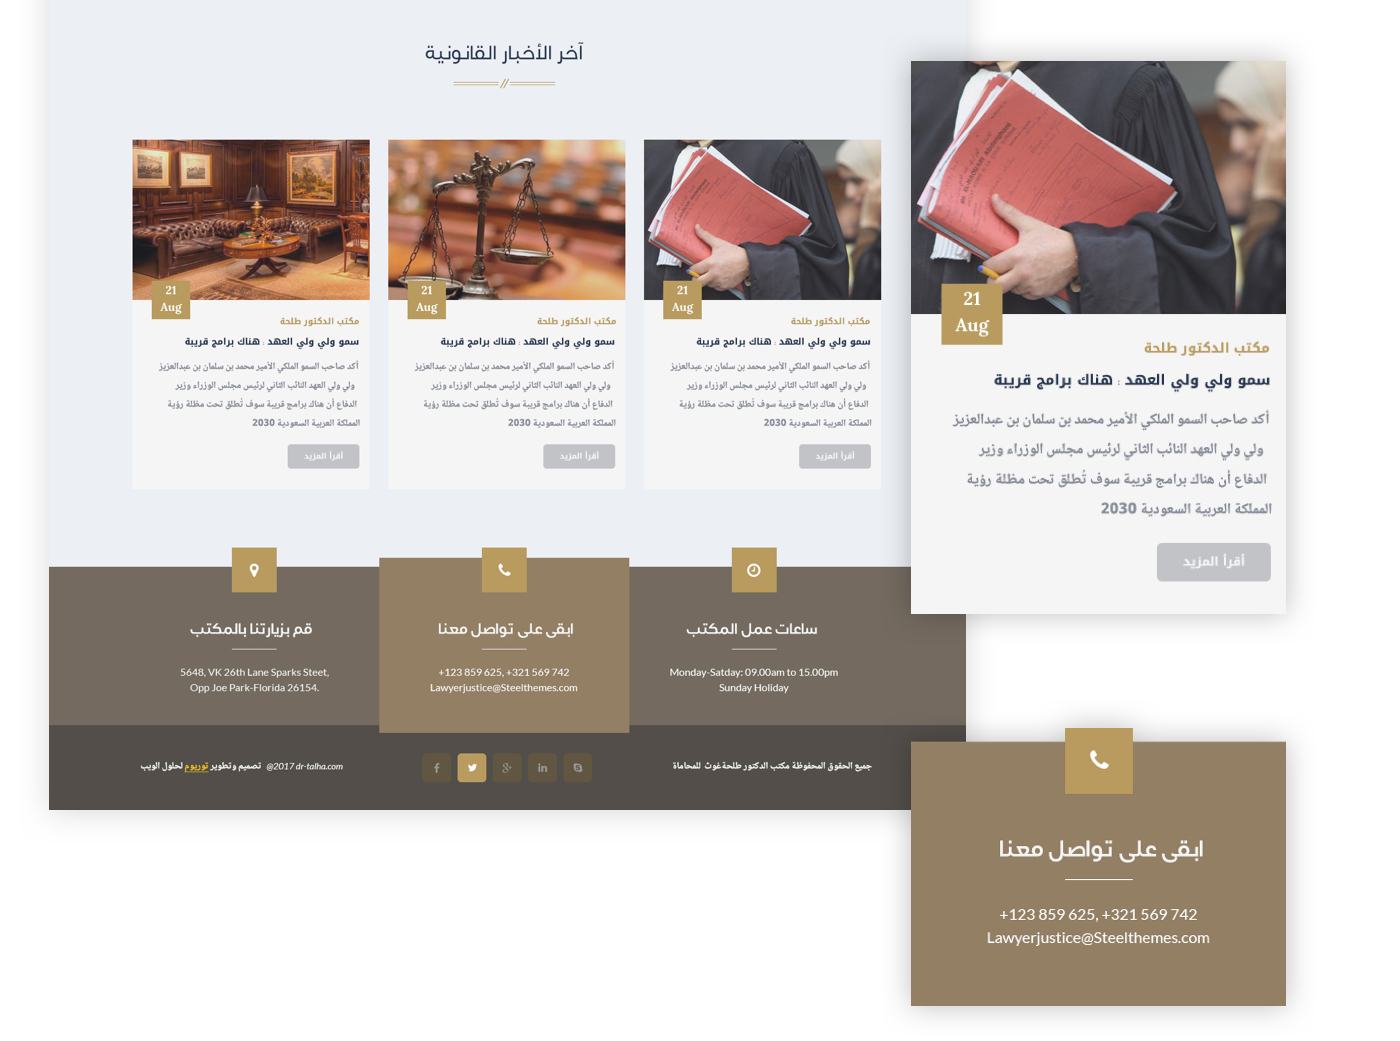 law firm lawyer arabic lawyer design talha design law web design